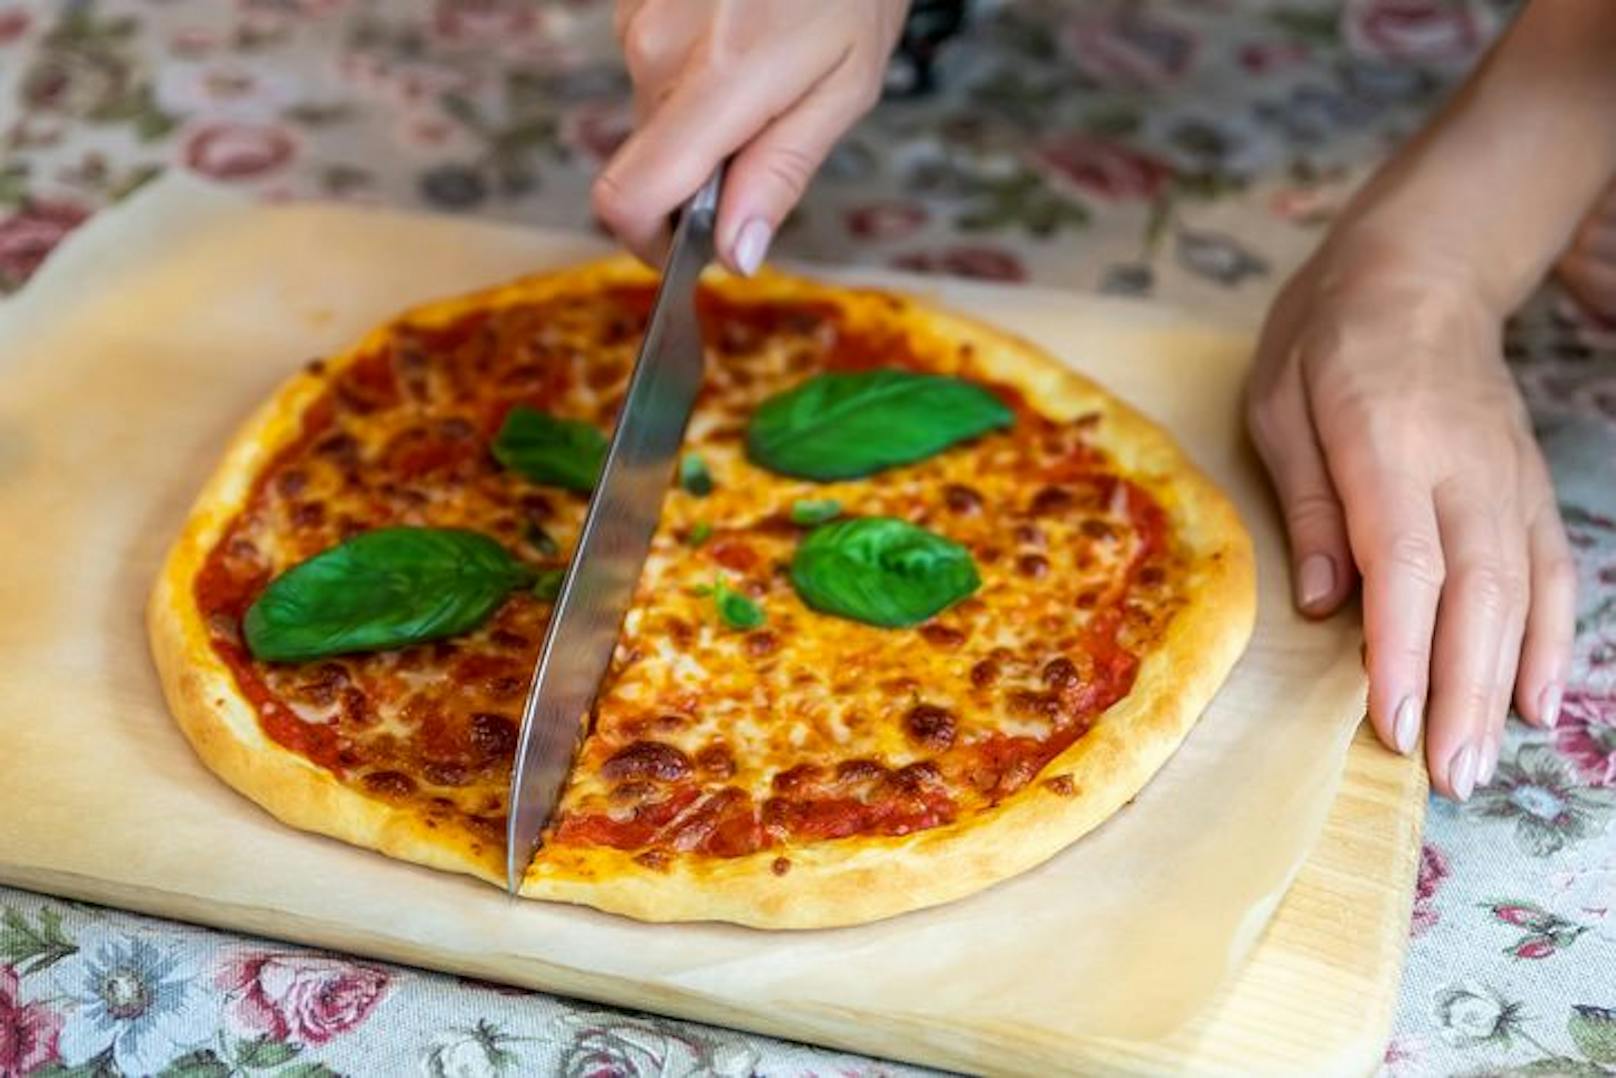 Ein Unbekannter zahlte erst in einer Pizzeria sein Essen, kam kurz darauf mit einem Messer wieder und drohte den Pizza-Koch umzubringen.